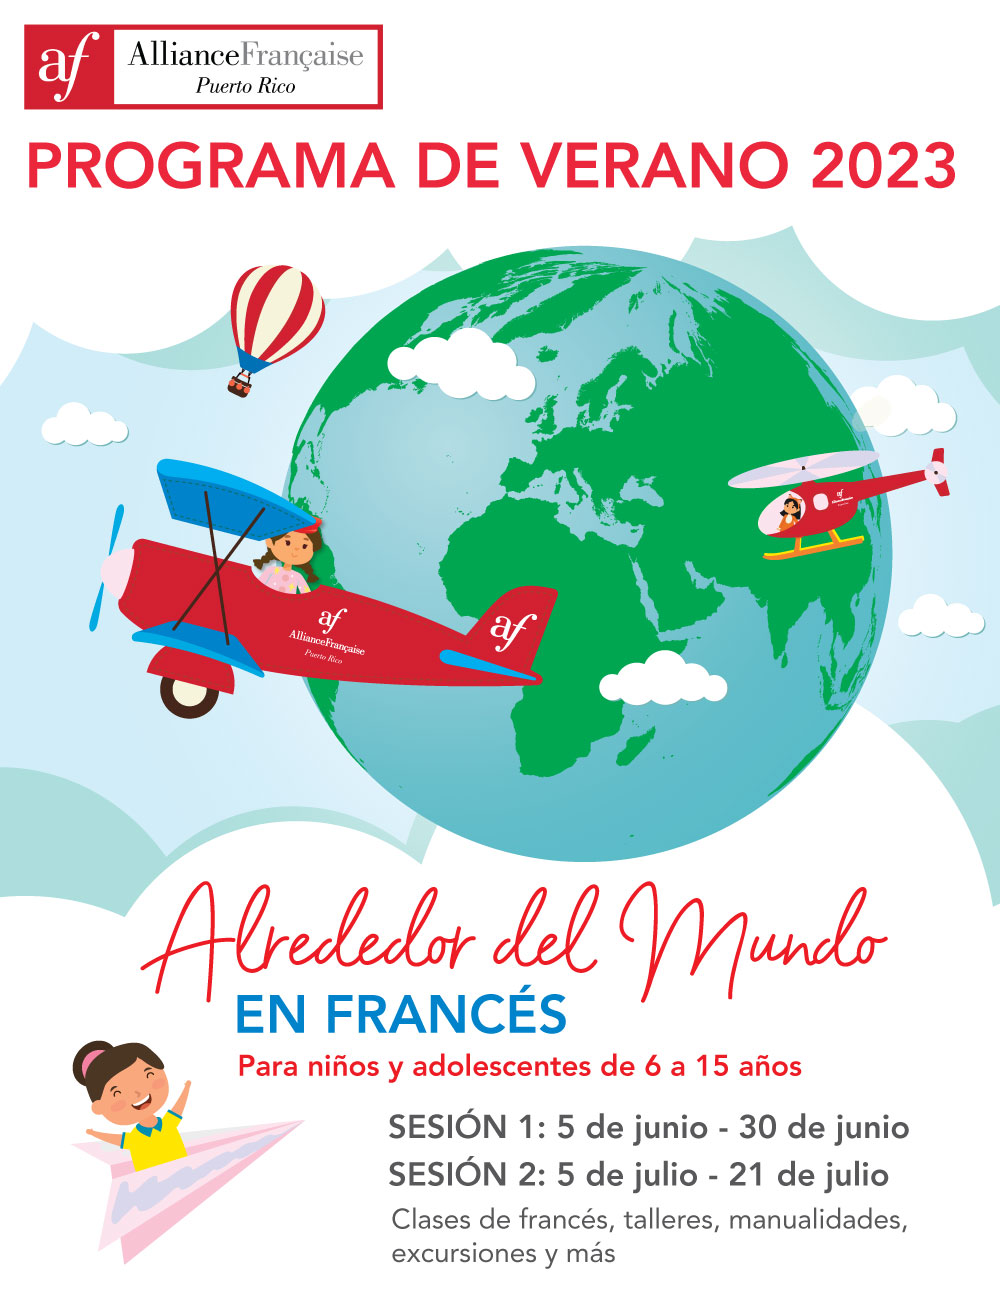 Programa de Verano 2023: Alrededor del Mundo en Francés